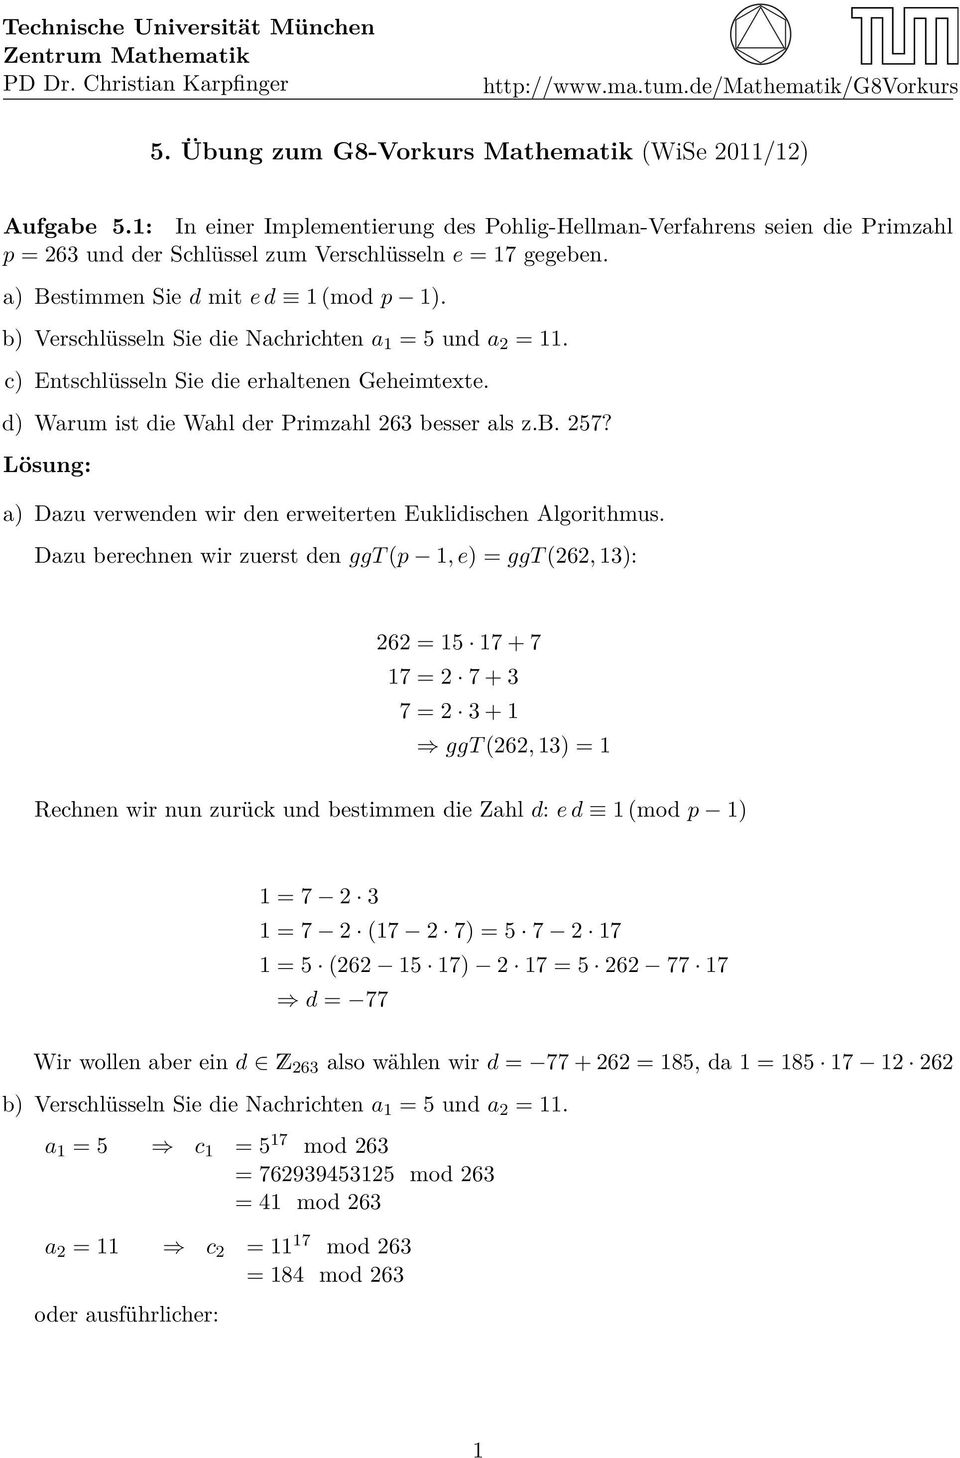 b) Verschlüsseln Sie die Nachrichten a 1 = 5 und a 2 = 11. c) Entschlüsseln Sie die erhaltenen Geheimtexte. d) Warum ist die Wahl der Primzahl 263 besser als z.b. 257?